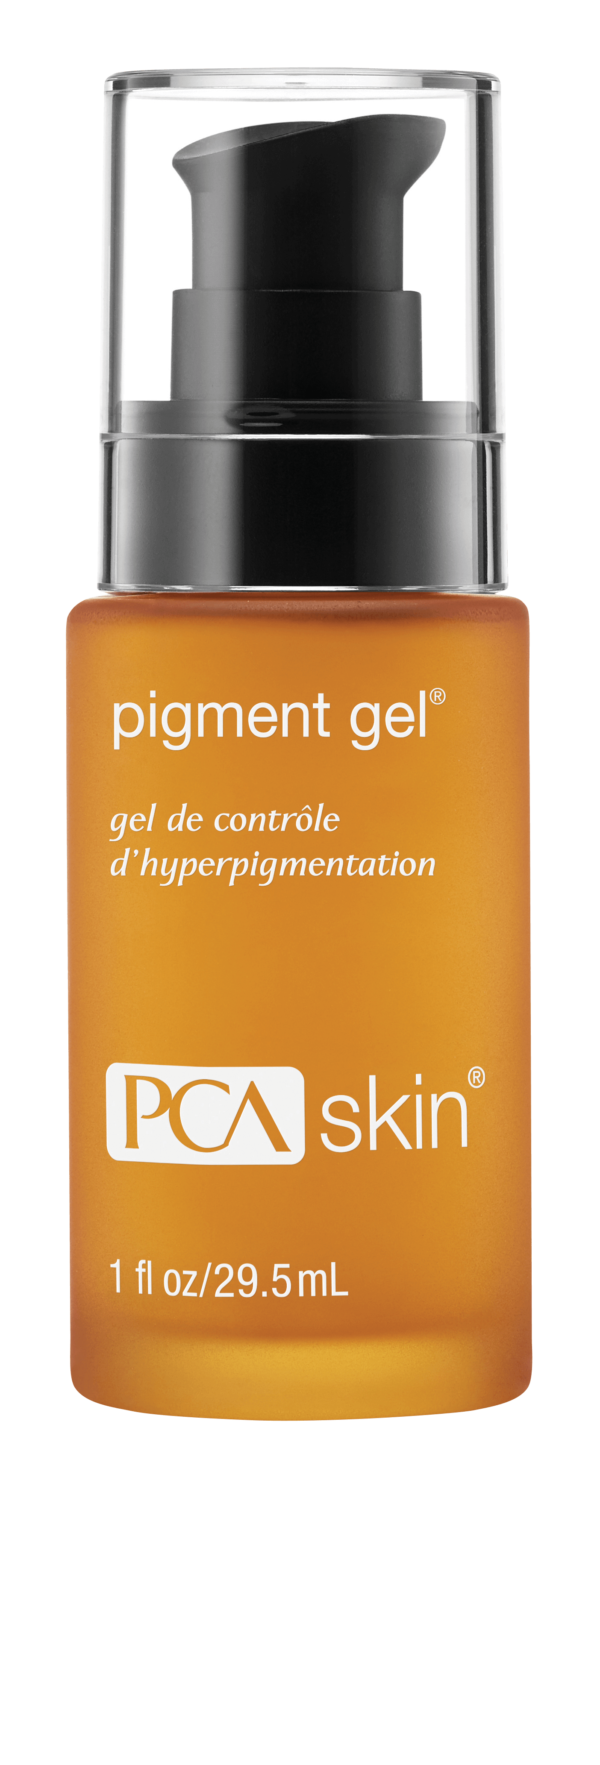 PCA_Skin_Pigment_Gel